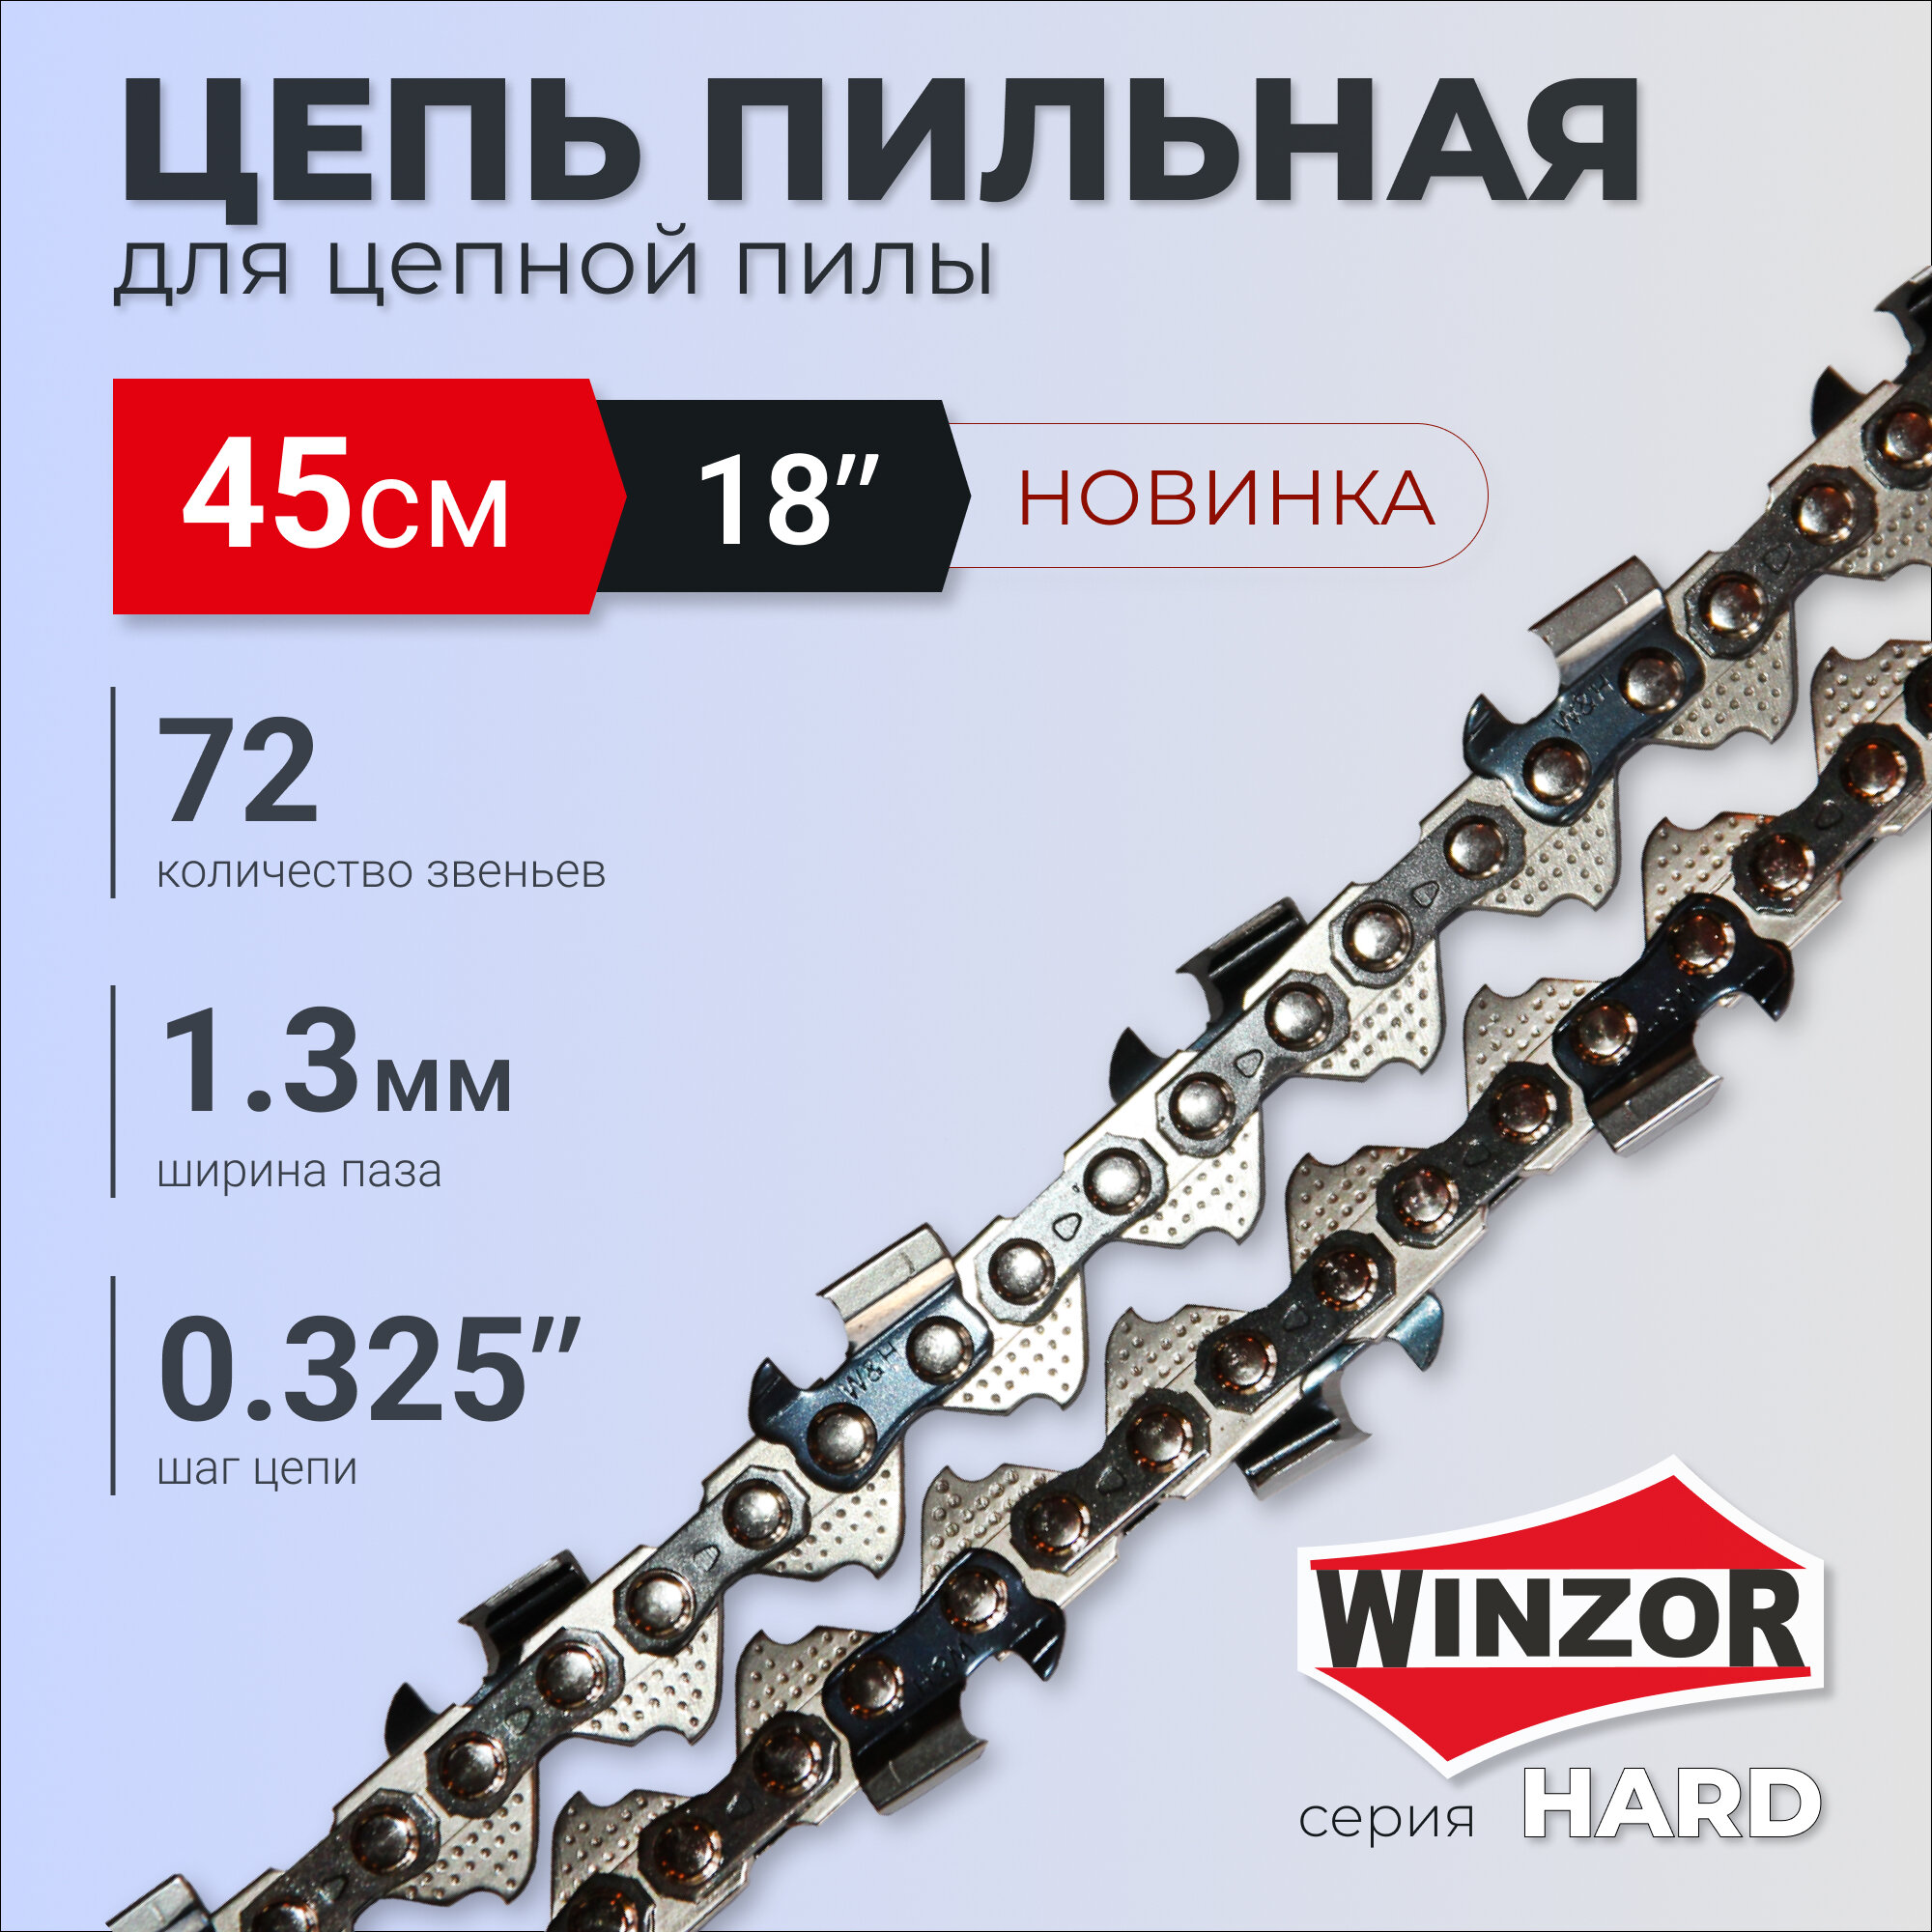 Цепь пильная WINZOR Hard для бензопилы - 18"(45см) 72 звена паз 1.3мм шаг 0.325"